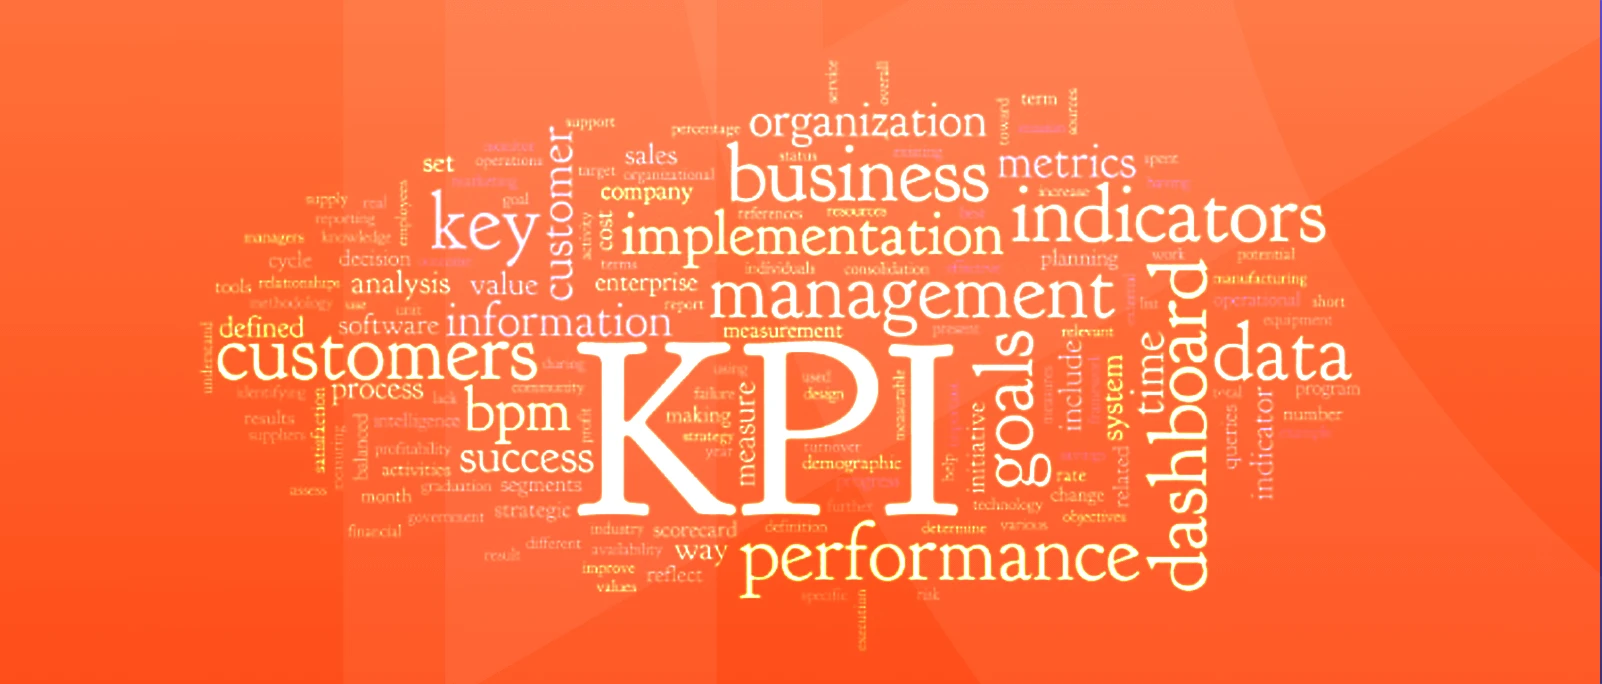 چگونگی استفاده از KPI در مدیریت فرآیند کسب و کار BPM